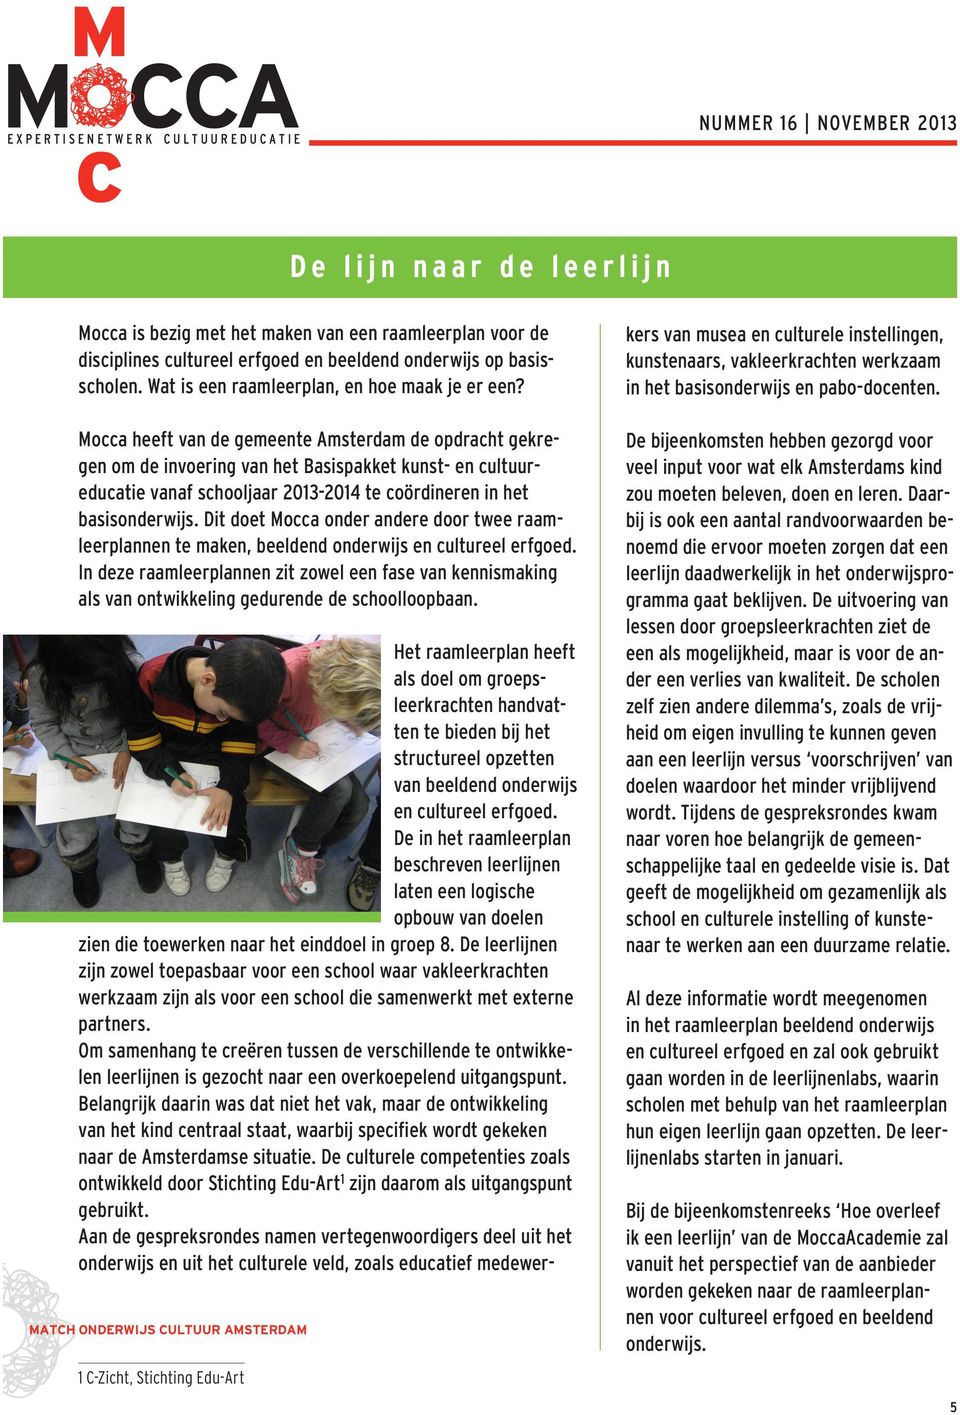 Mocca heeft van de gemeente Amsterdam de opdracht gekregen om de invoering van het Basispakket kunst- en cultuureducatie vanaf schooljaar 2013-2014 te coördineren in het basisonderwijs.